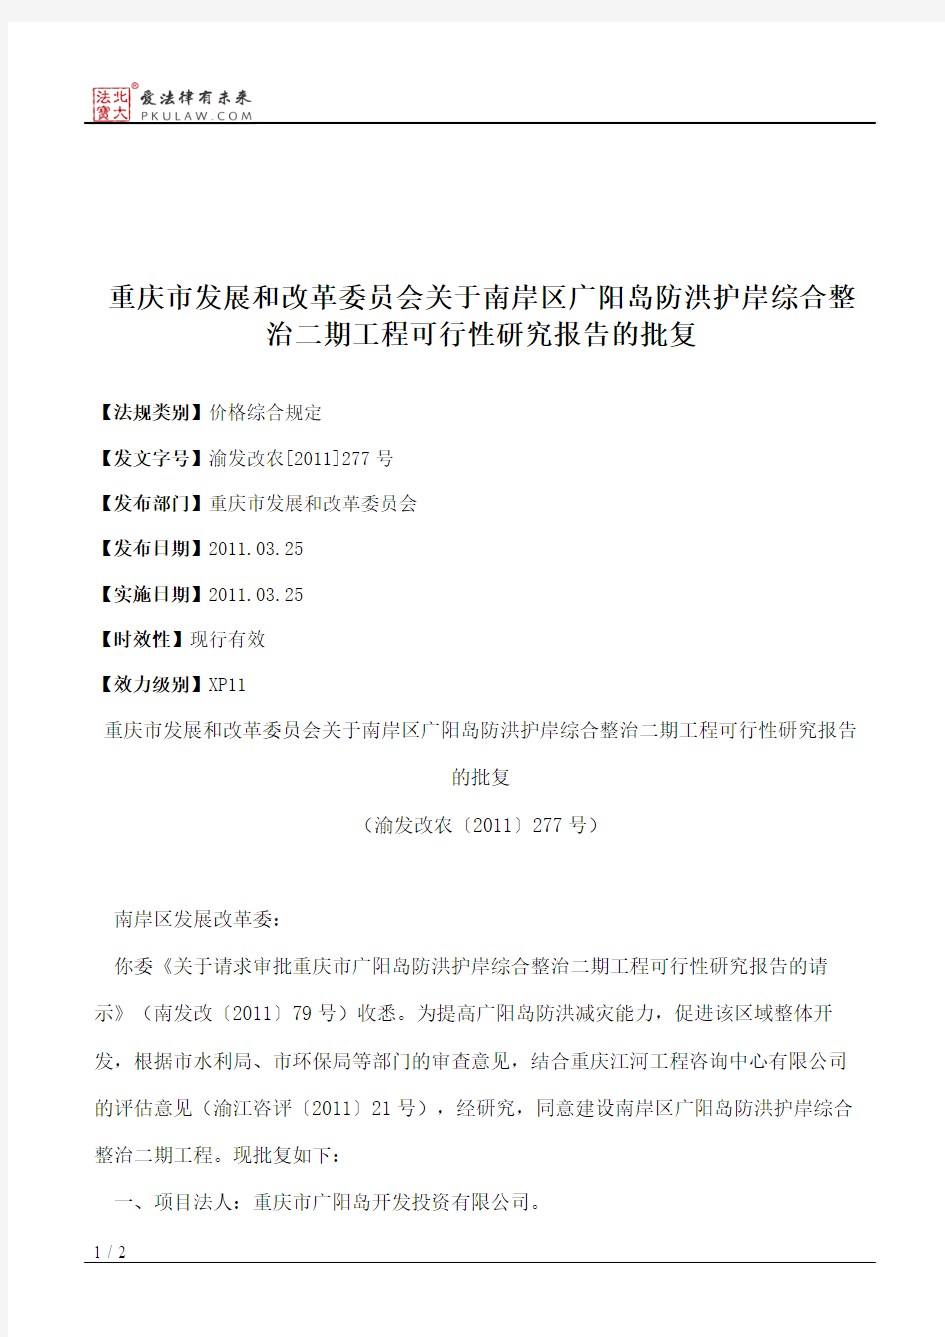 重庆市发展和改革委员会关于南岸区广阳岛防洪护岸综合整治二期工